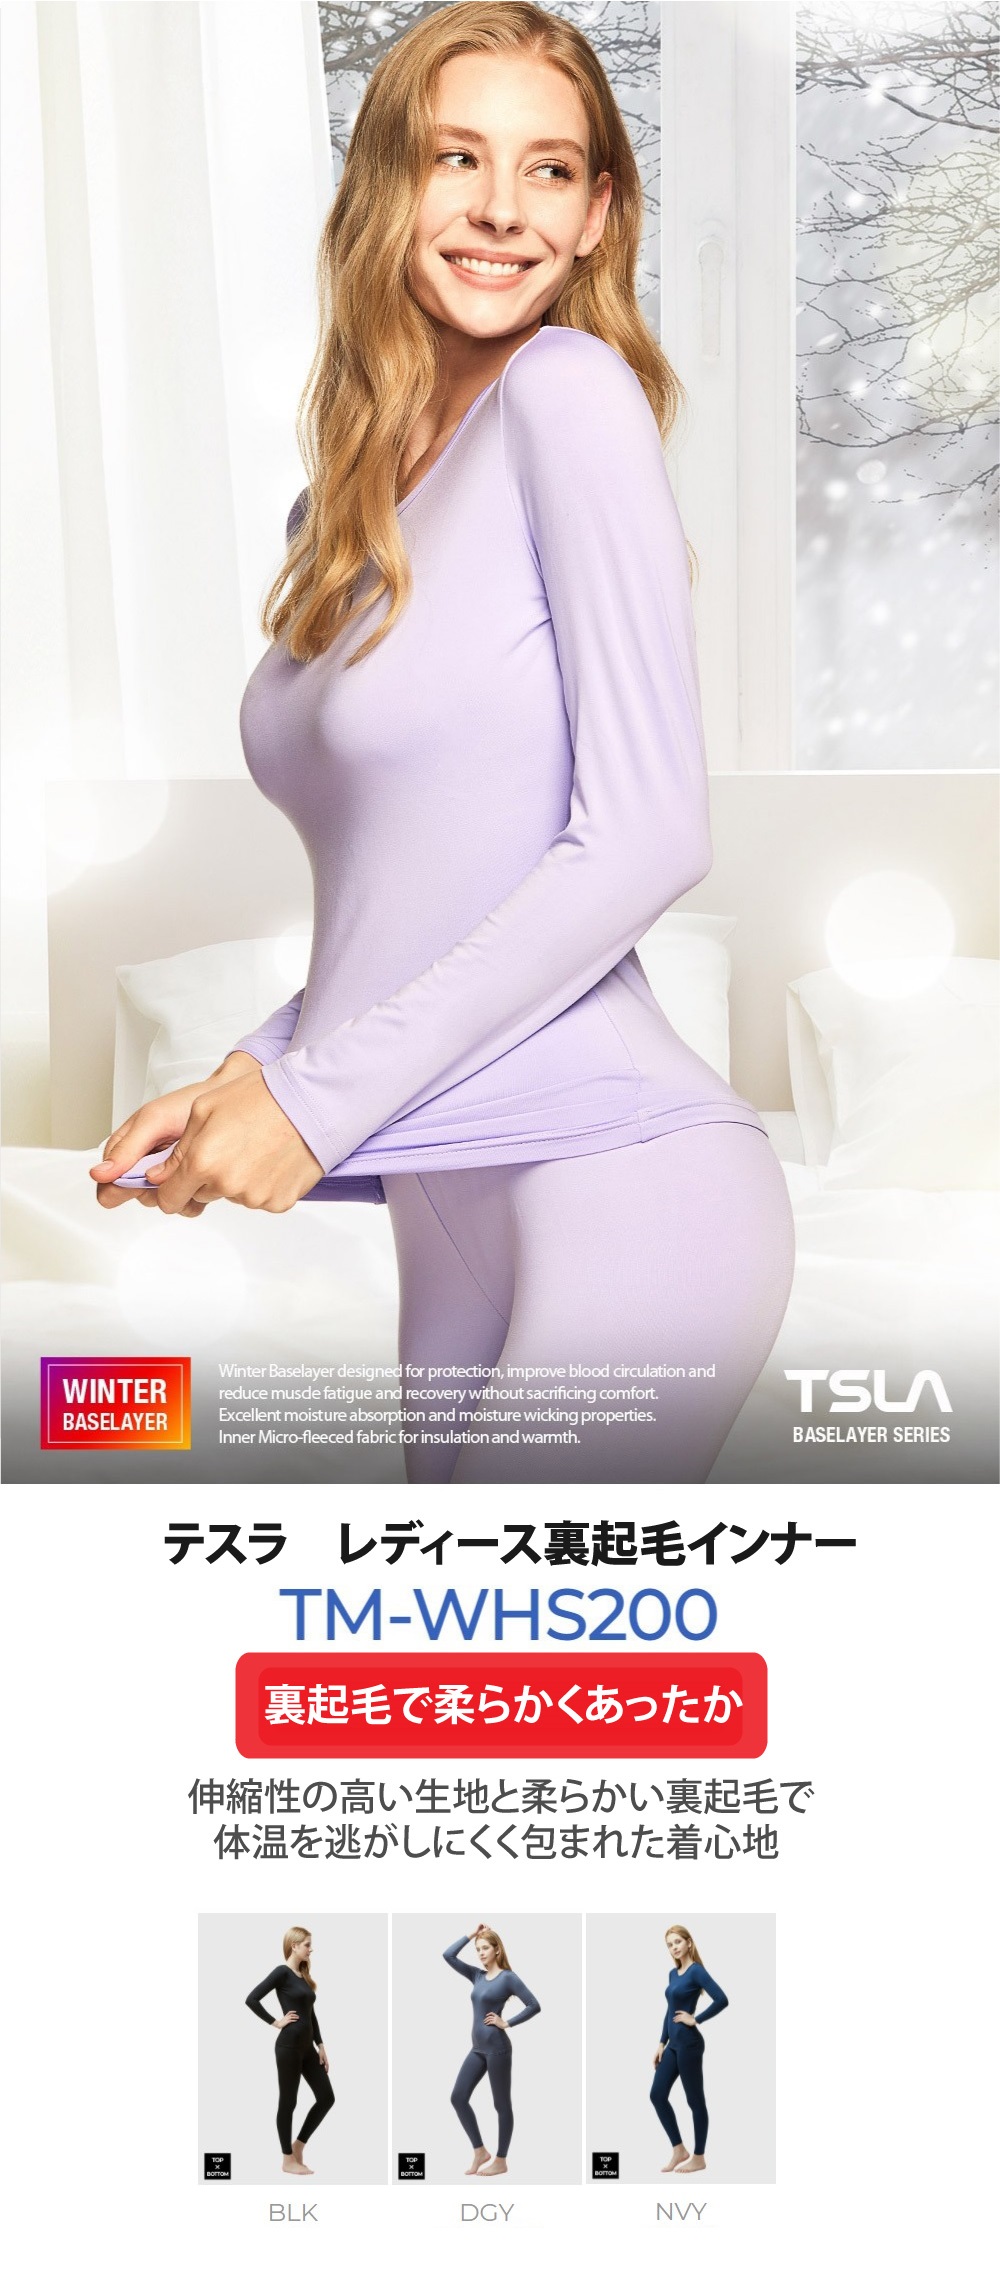 TSLA Tesla WHS200 Women's Fleece Lined Top and Bottom Set - XL - Dark Gray